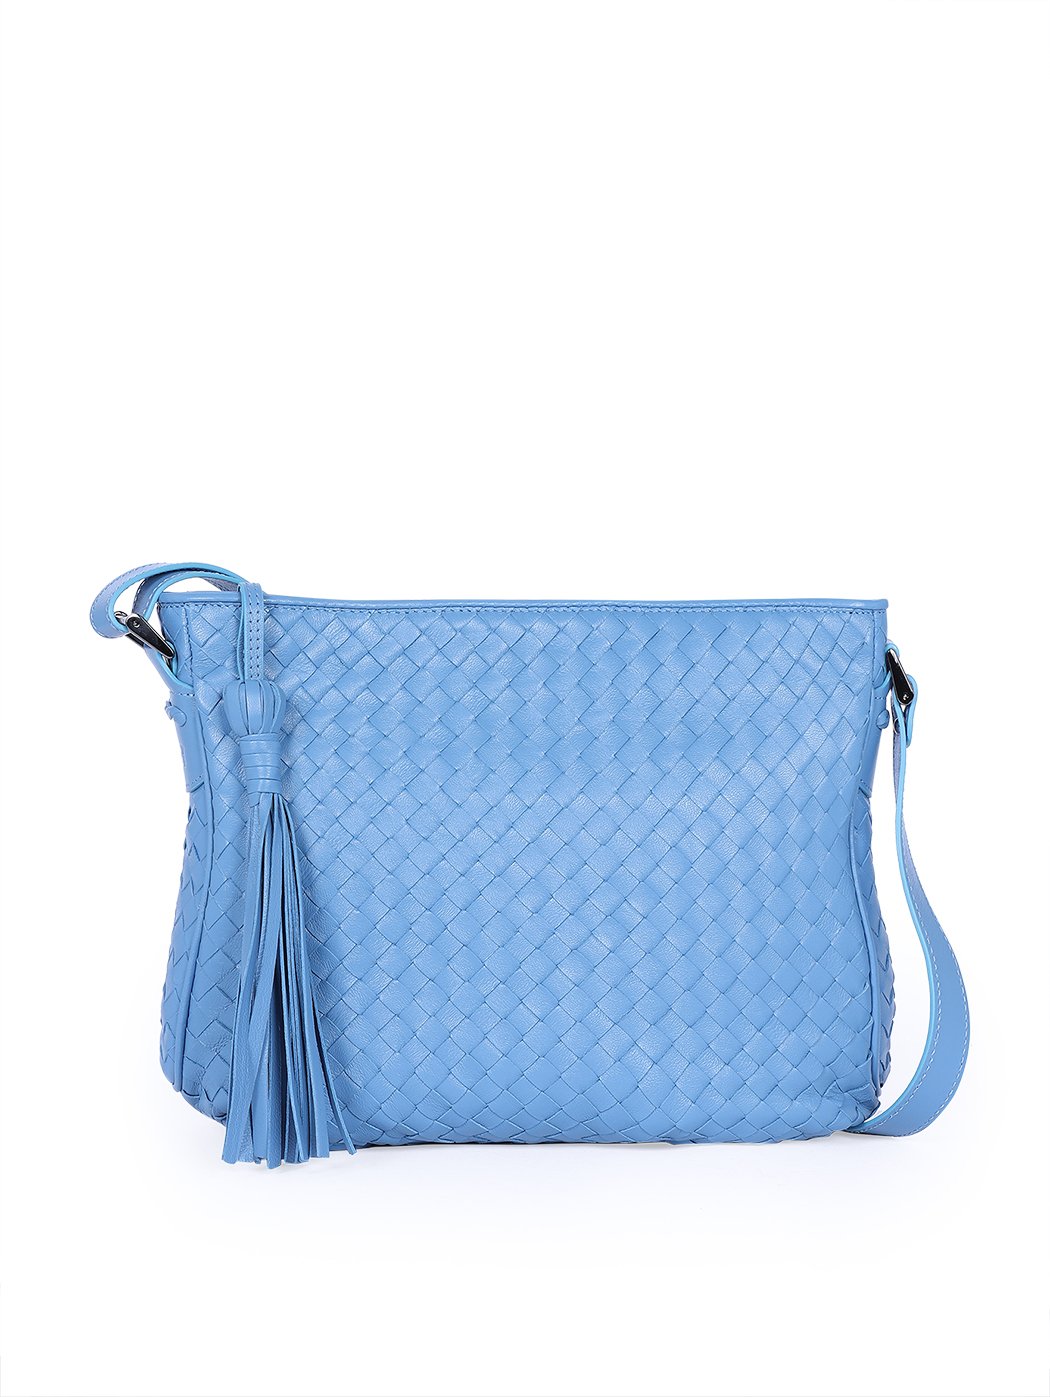 Женская плетеная сумка кросс – боди коллекции Intrecci светло - голубого цвета